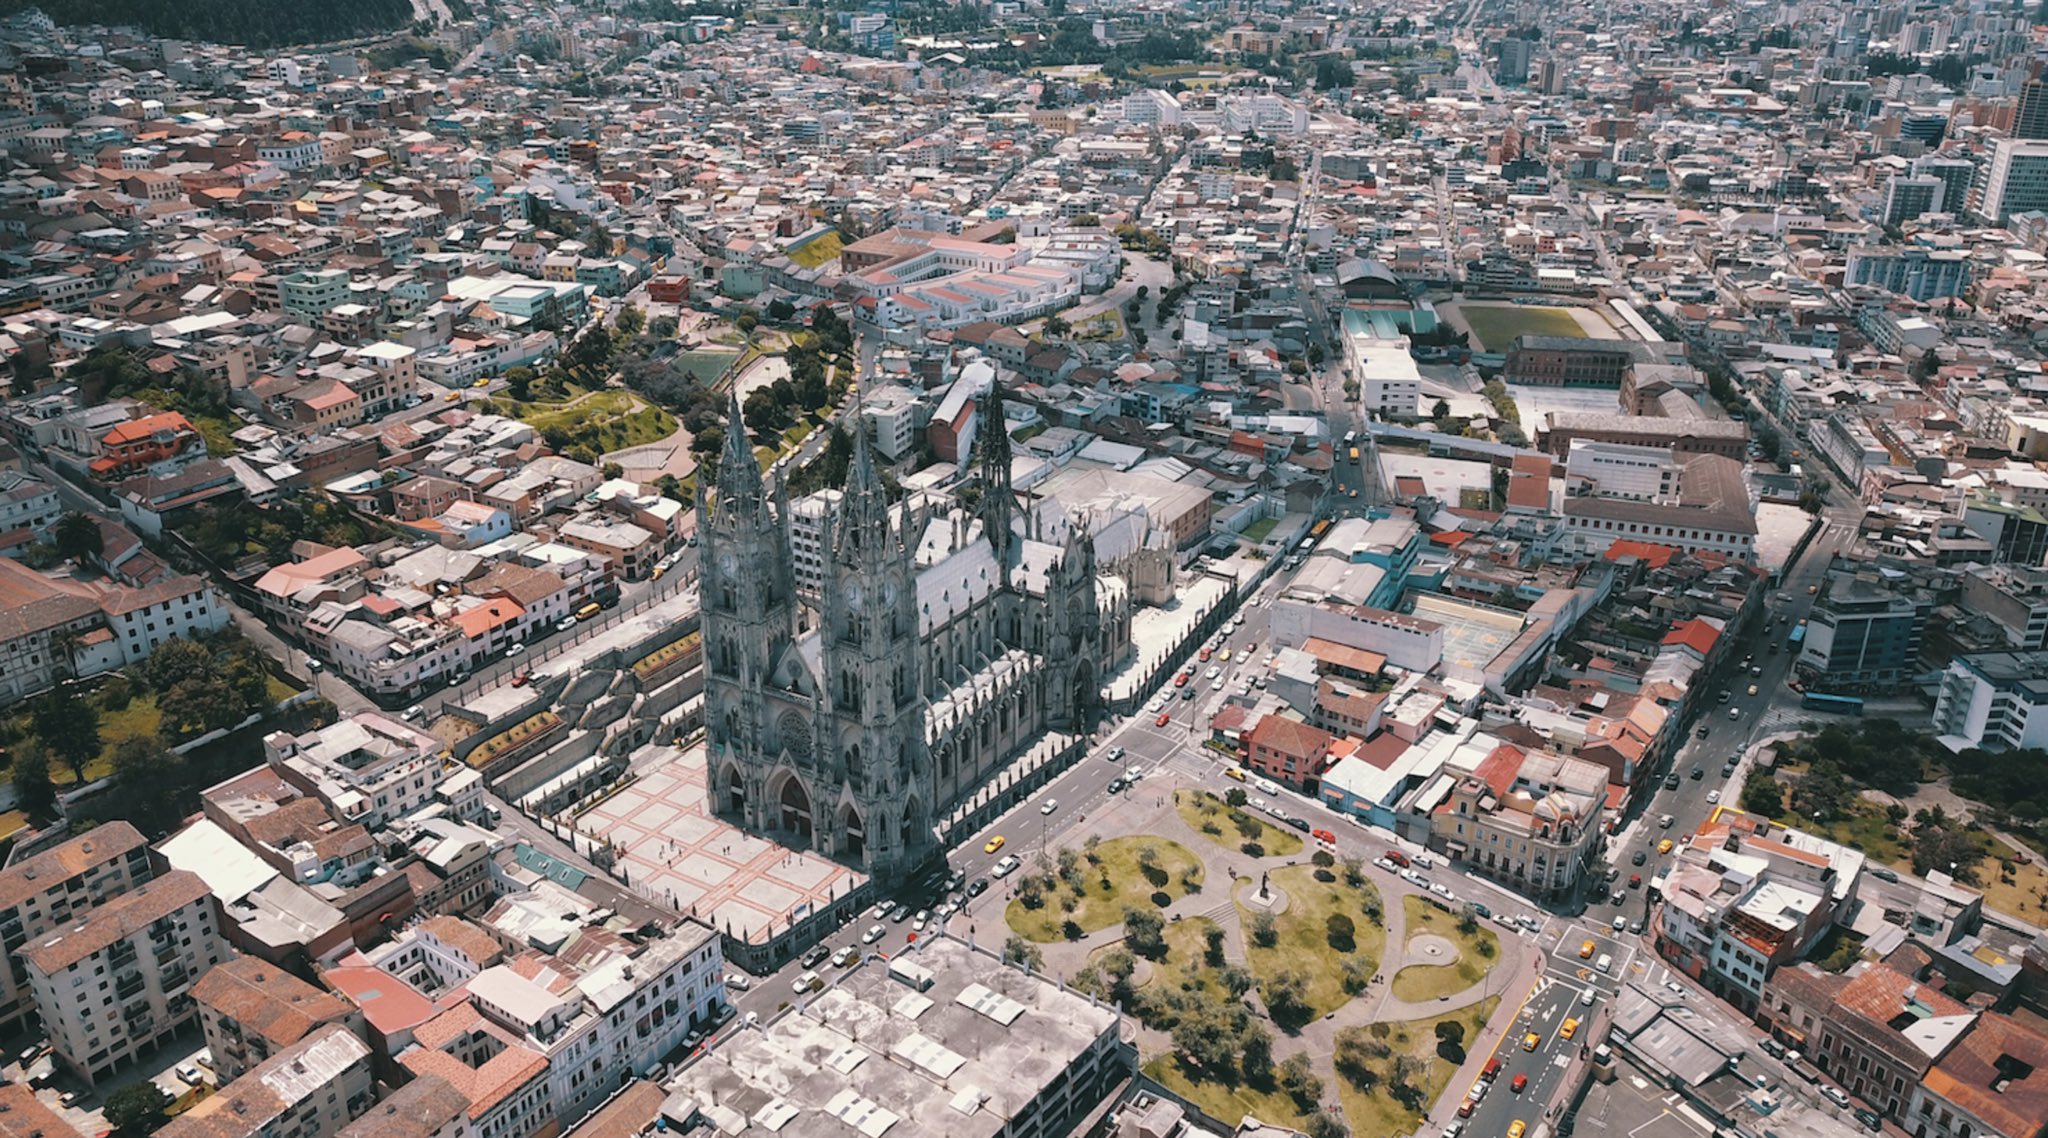 Viaja Ecuador on Twitter: "Quito posee una muestra de arte impresionan...